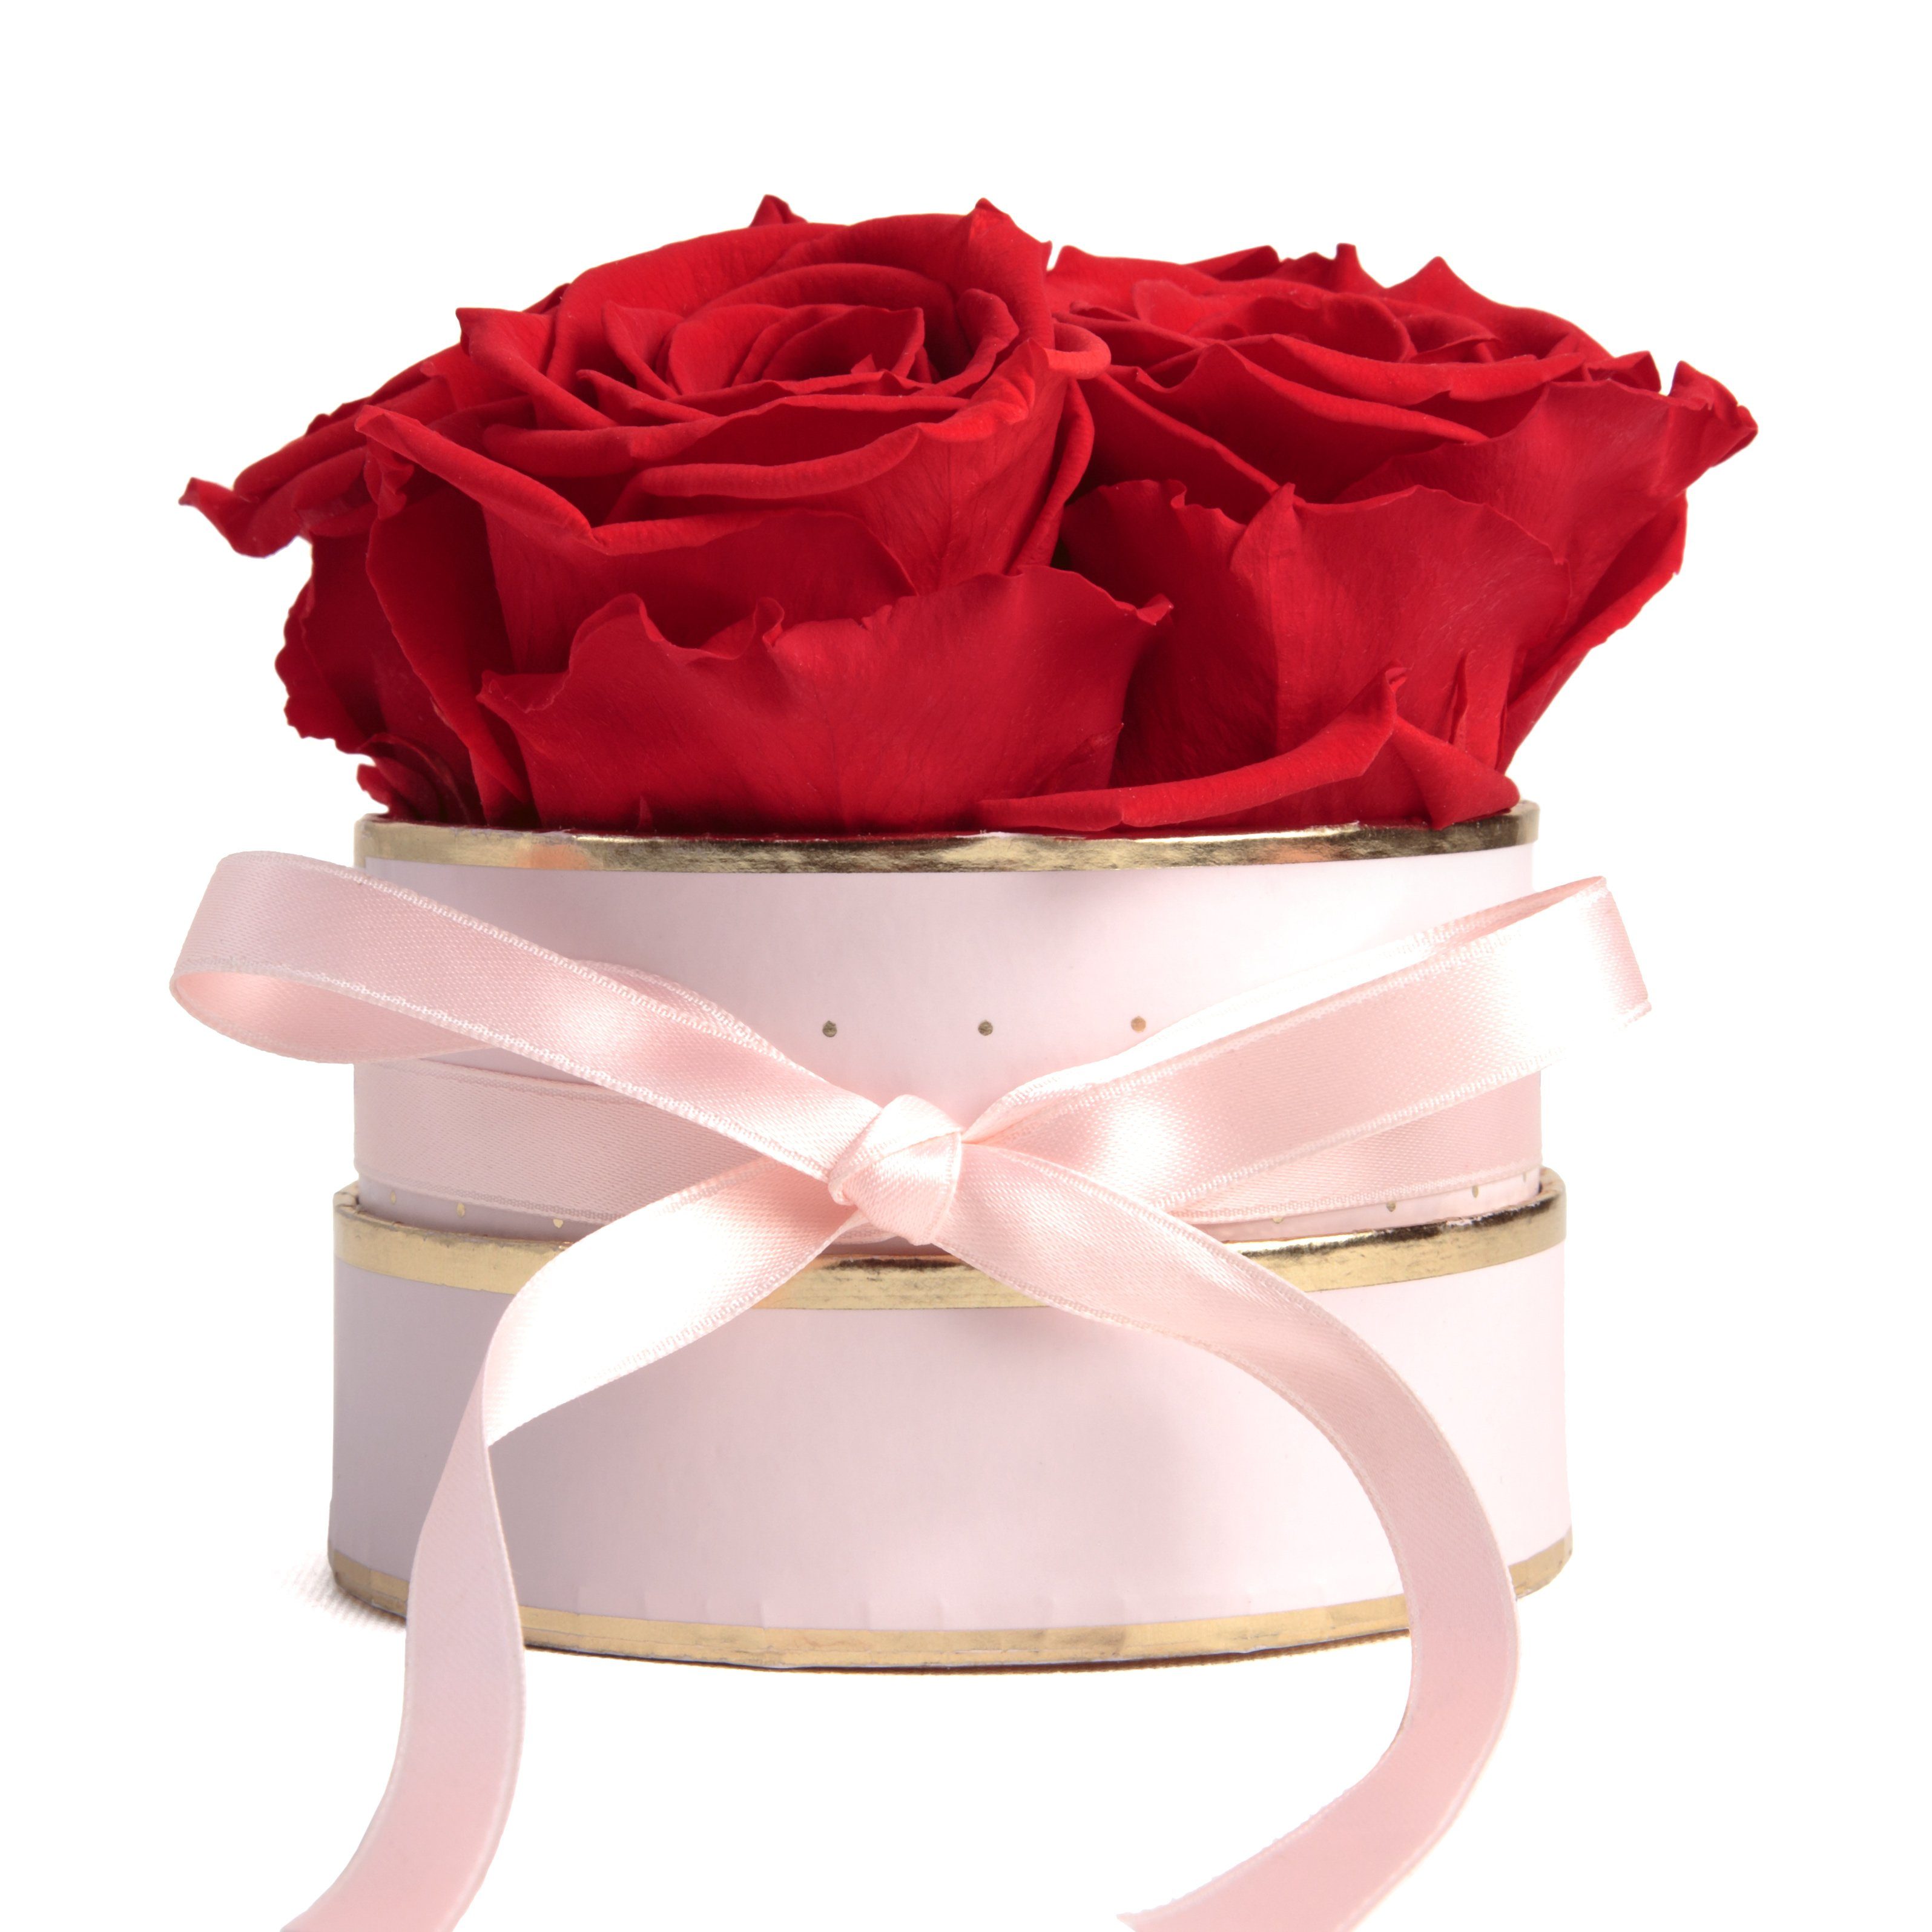 Kunstblume Infinity Rosenbox rosa rund 4 konservierte Rosen Geschenk für Frauen Rose, ROSEMARIE SCHULZ Heidelberg, Höhe 10 cm, echte konservierte Rosen Rot